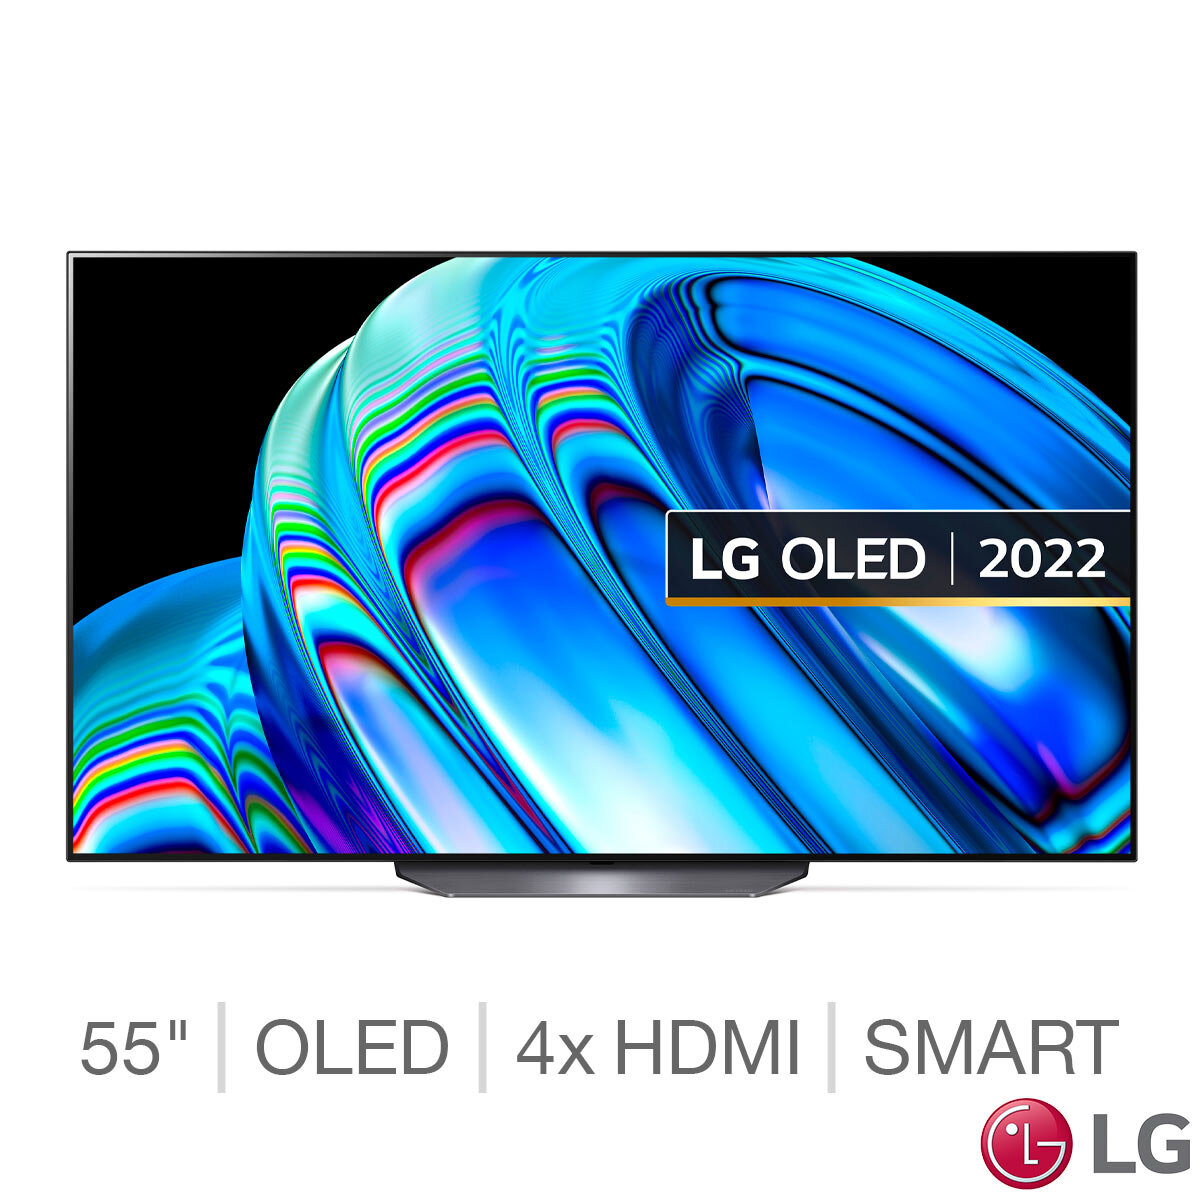 Buy LG OLED55B26LA 55 inch OLED 4K Ultra HD Smart TV at Costco.co.uk